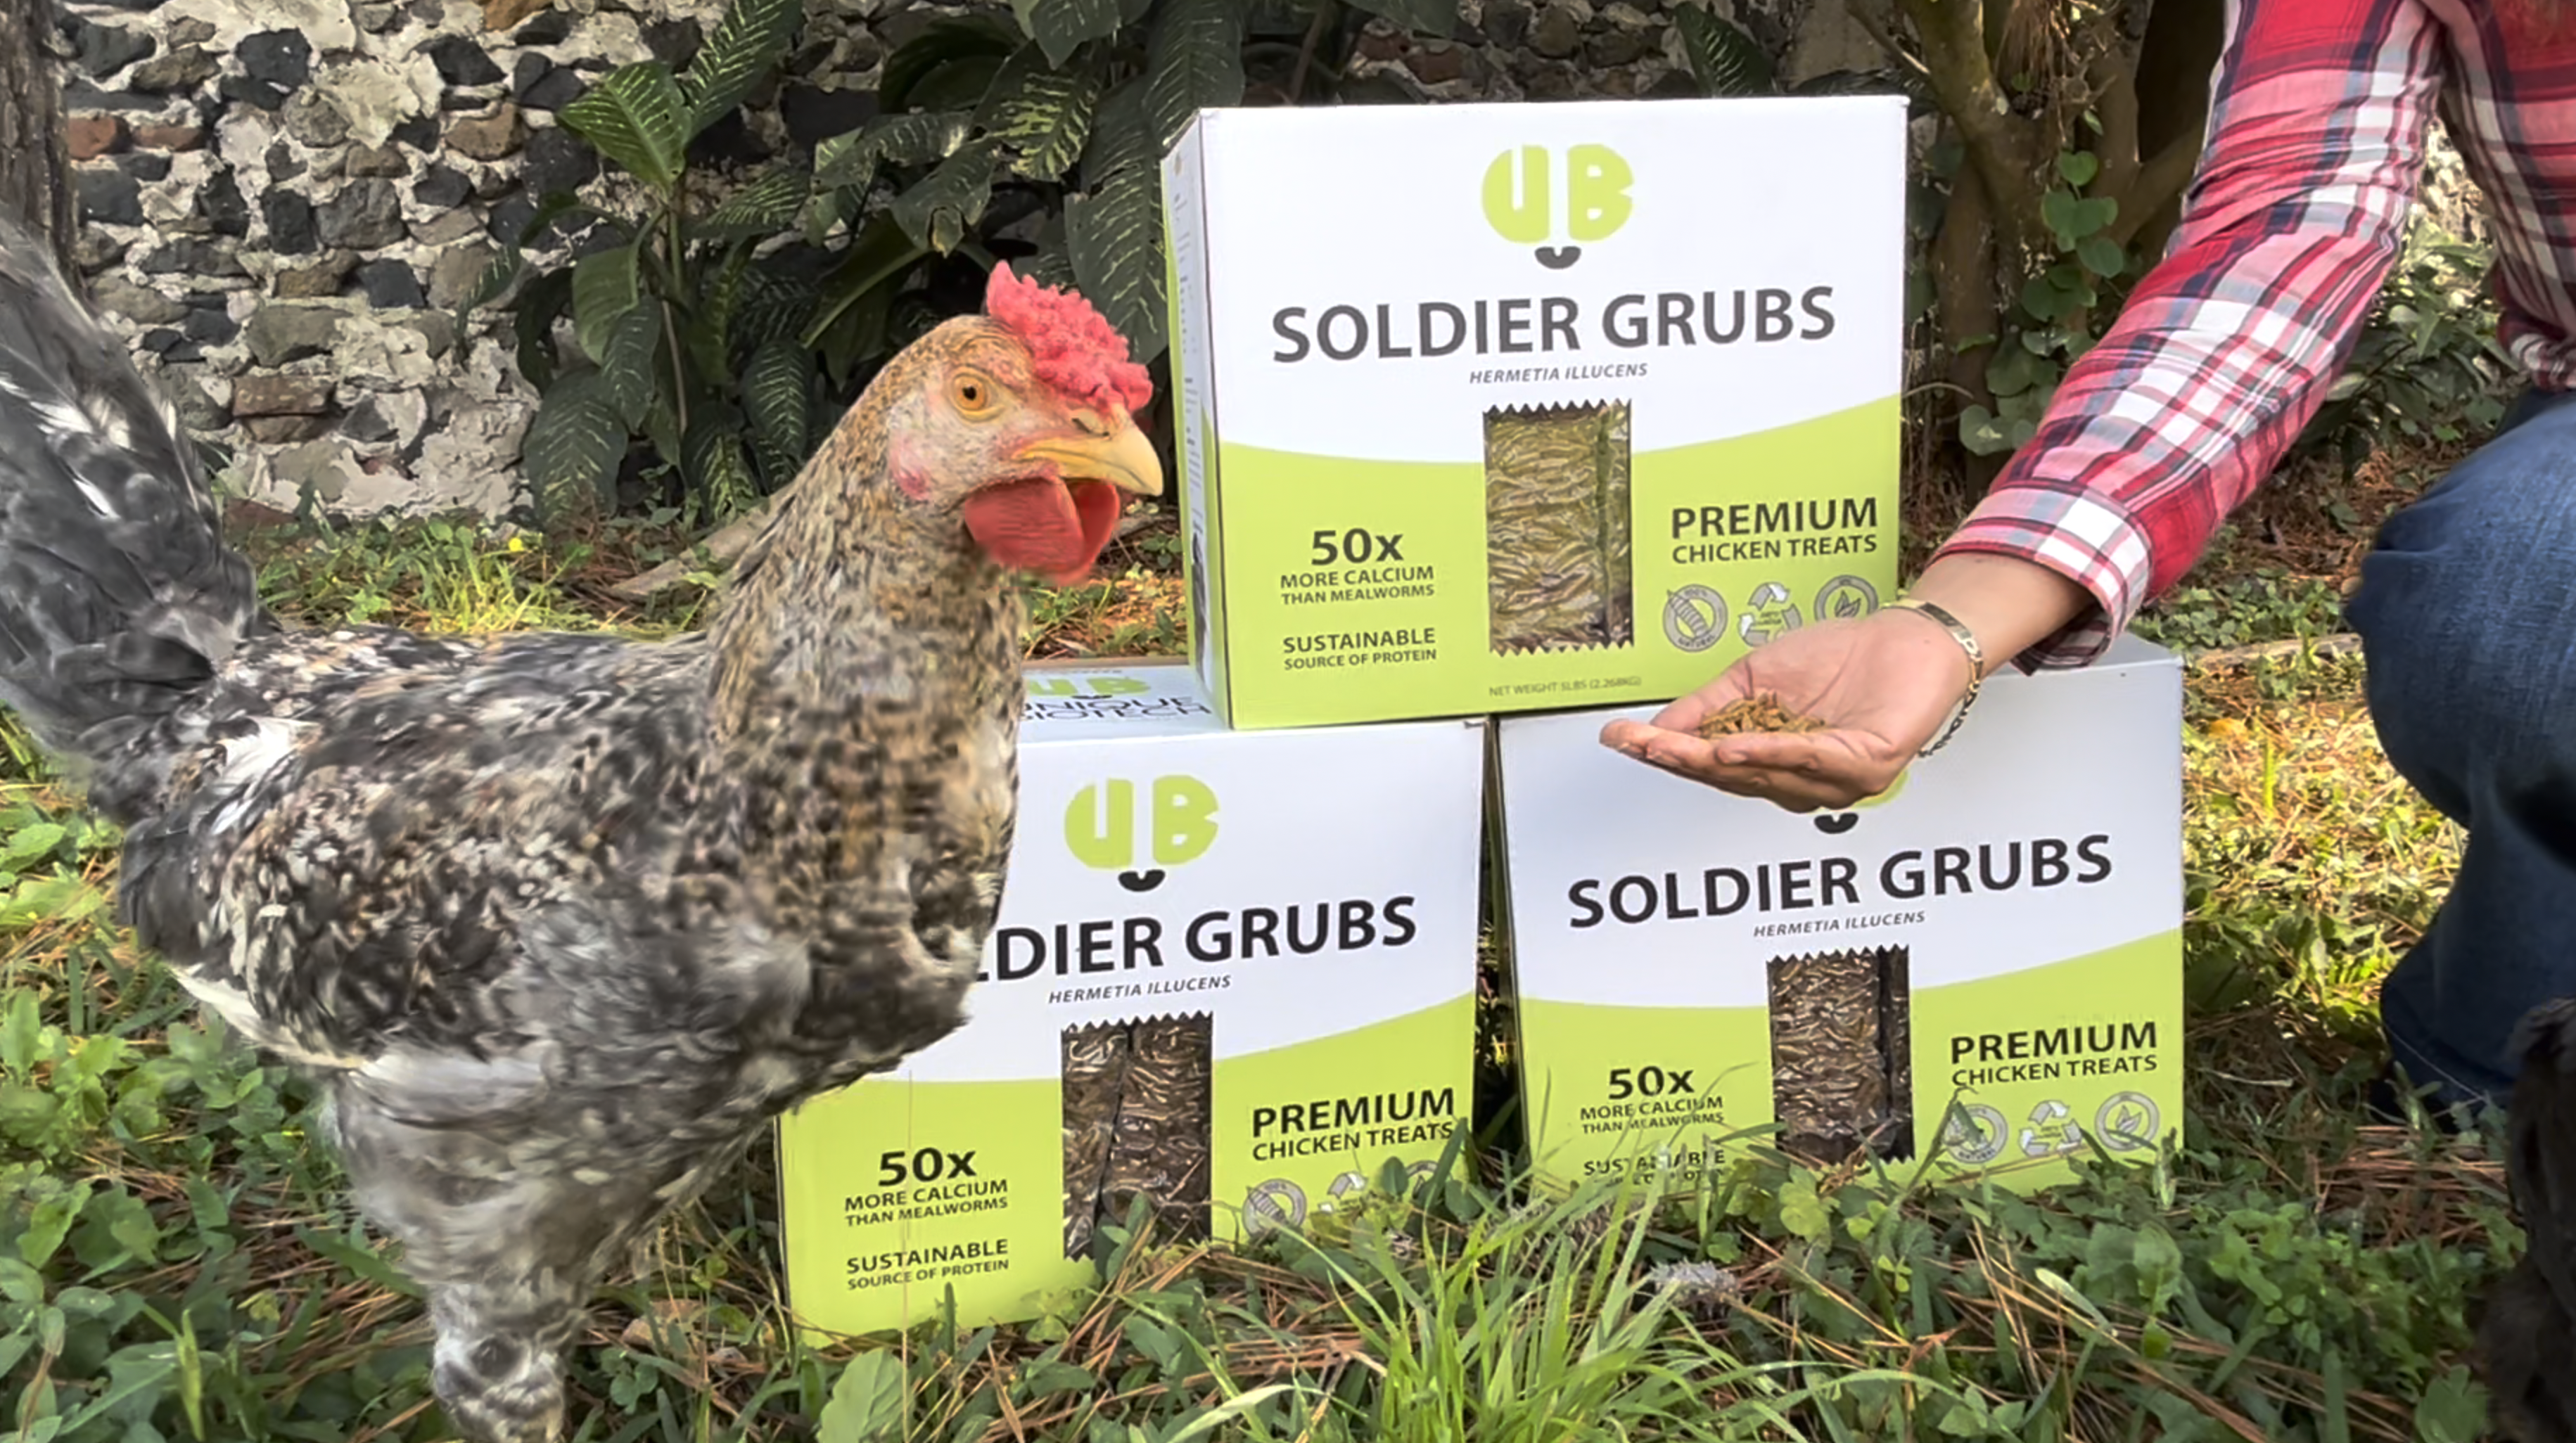 UB soldier grubs chicken handout